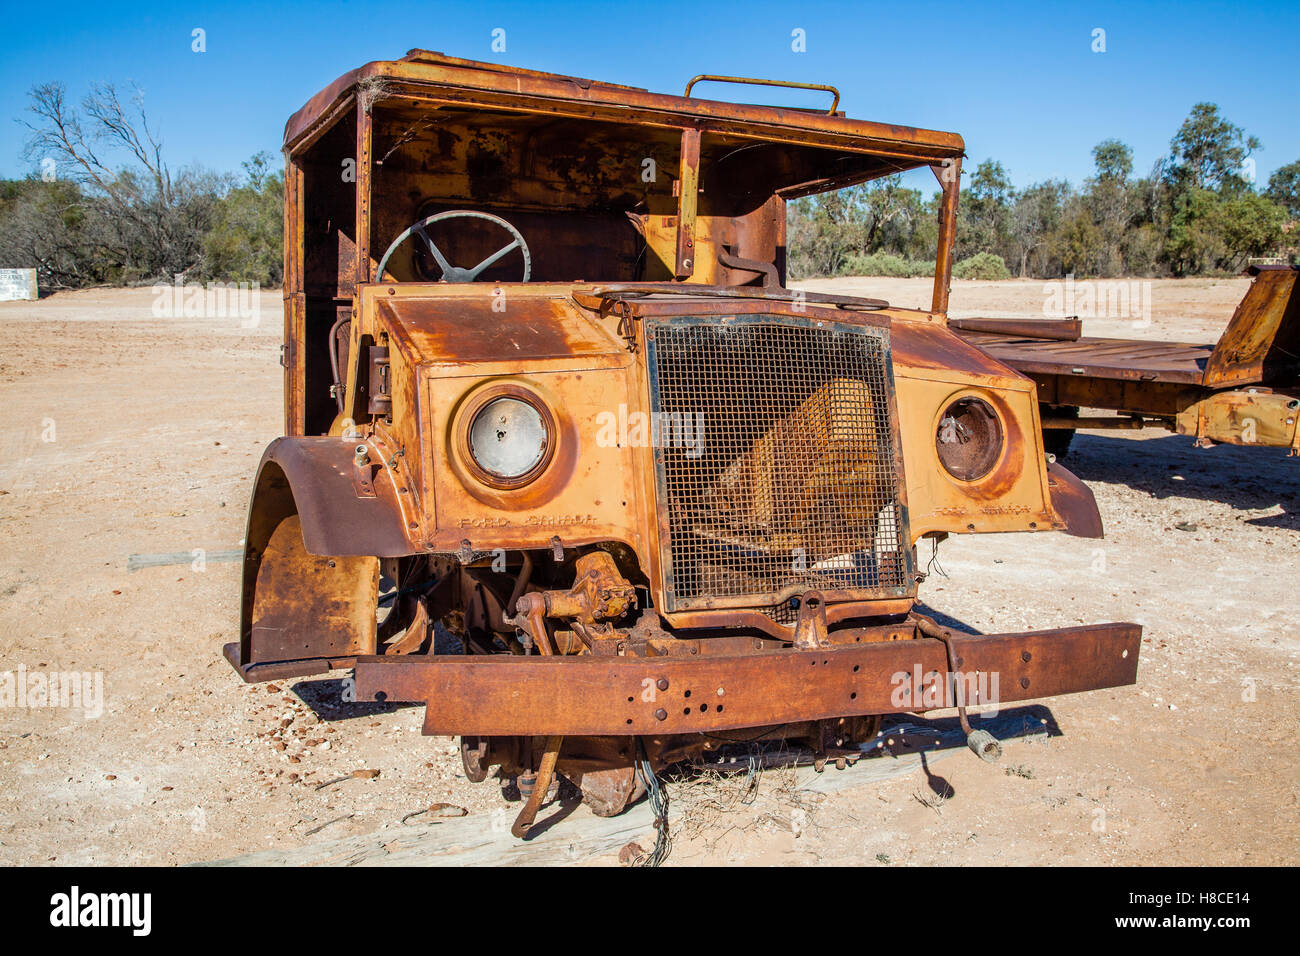 Cabine de Ford Canada vintage outback mail chariot à Mungerannie, Birdsville Track, l'Australie du Sud Banque D'Images